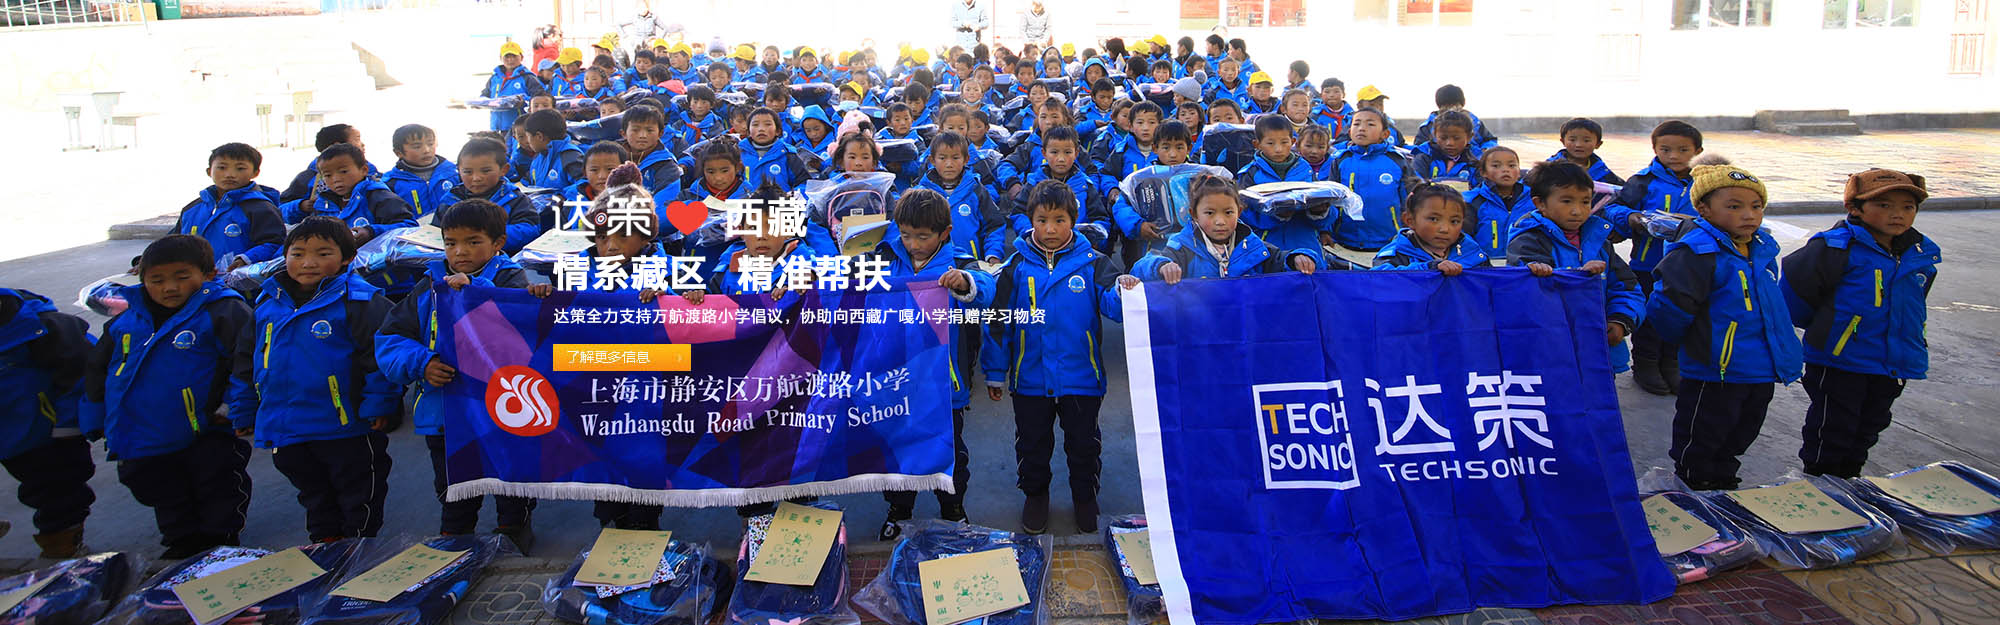 达策全力支持万航渡路小学倡议，协助向西藏广嘎小学捐赠学习物资